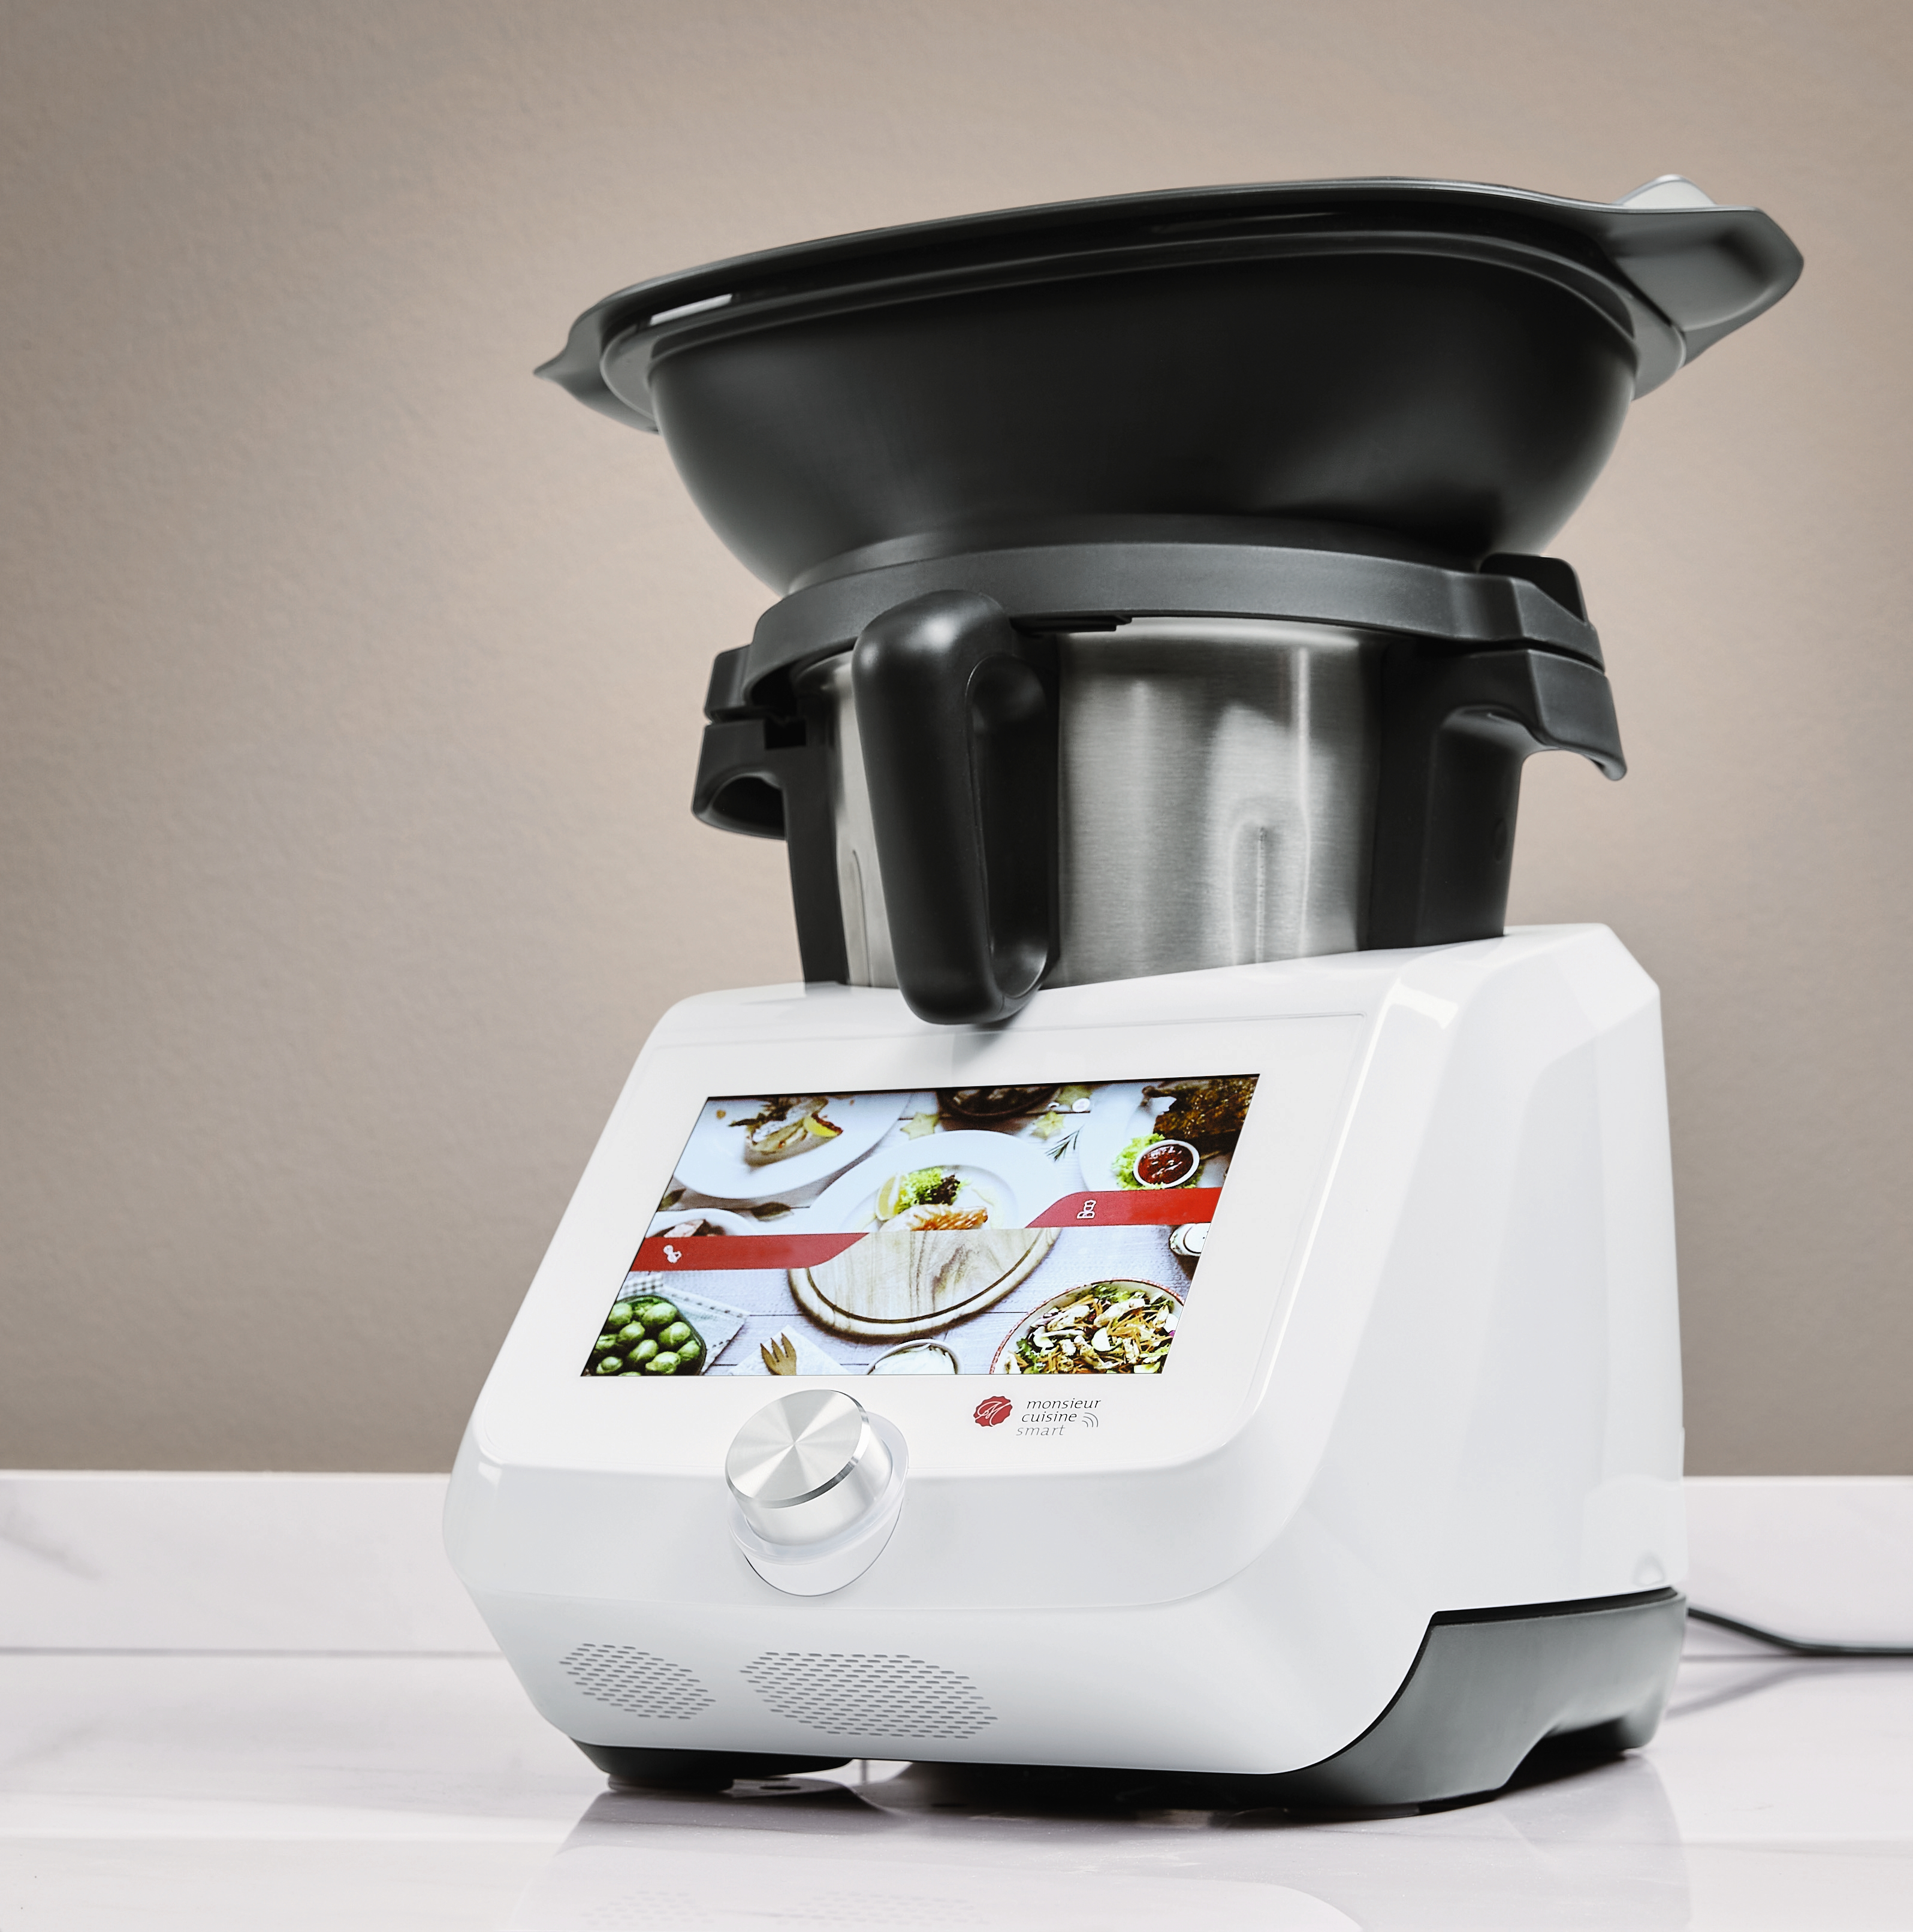 Les robots cuiseurs sont-ils une arnaque en cuisine ? L'avis d